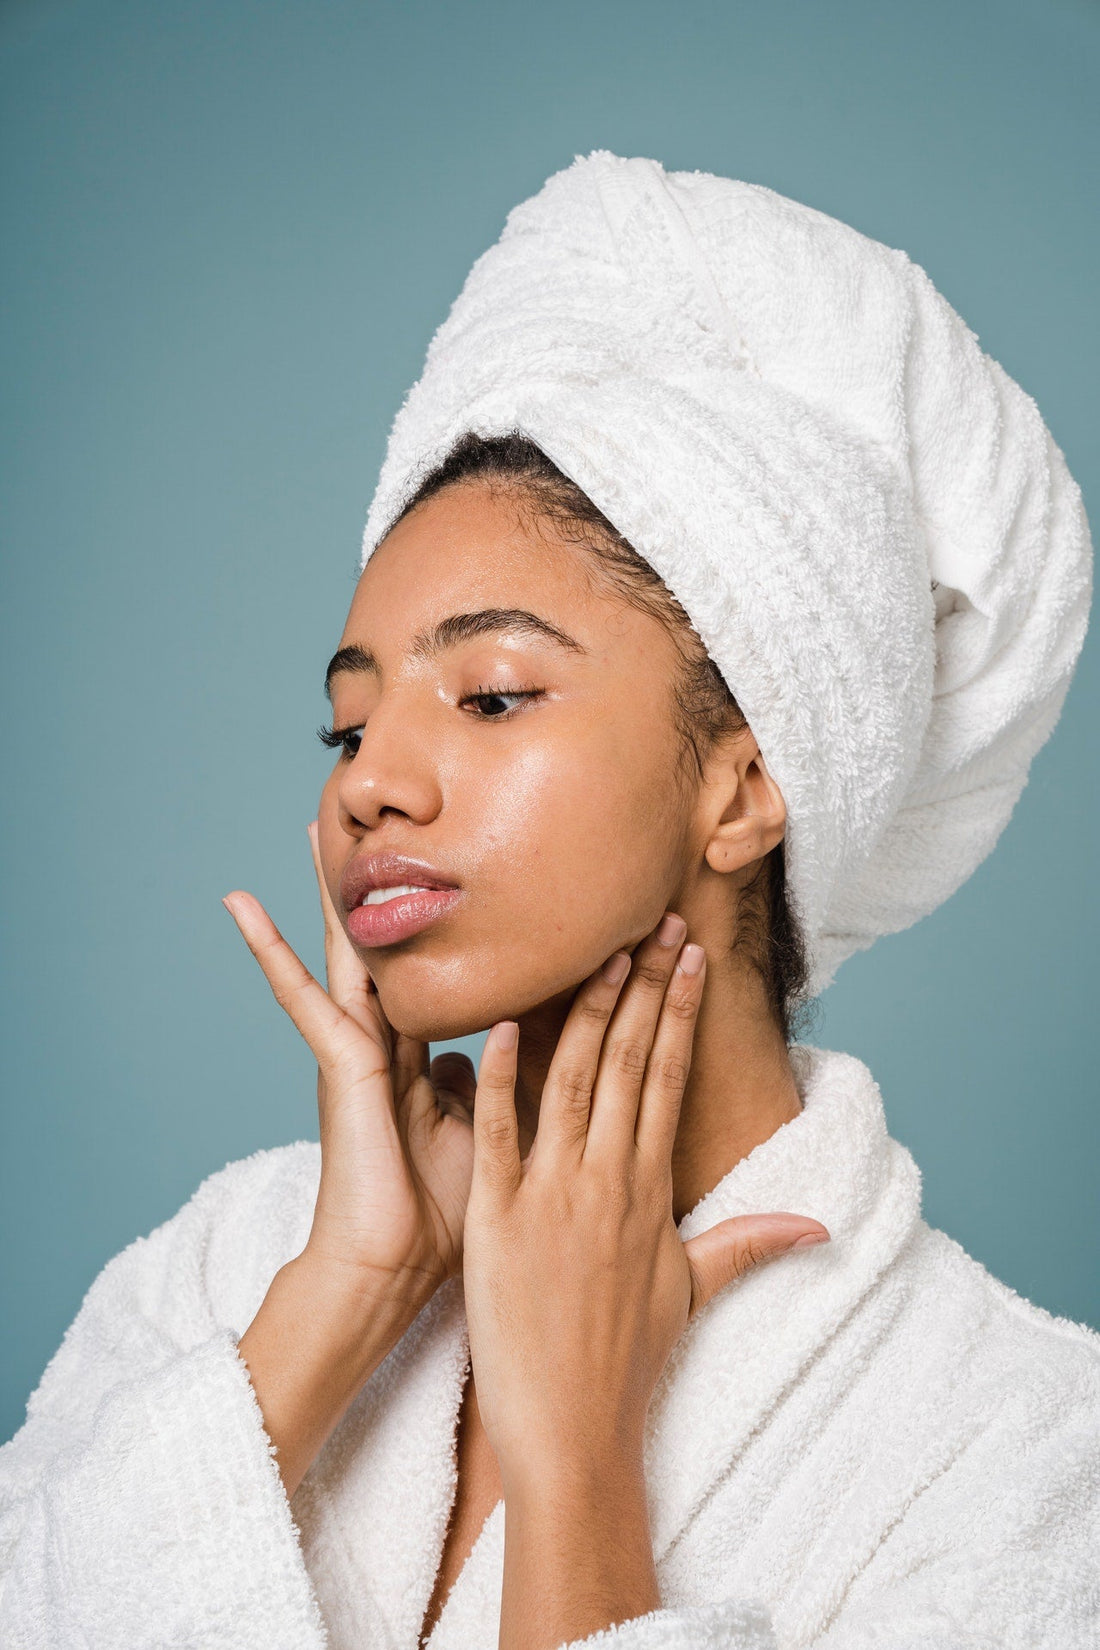 Il massaggio del viso: essenziale per contrastare le rughe | SINFONIE BOTANICHE